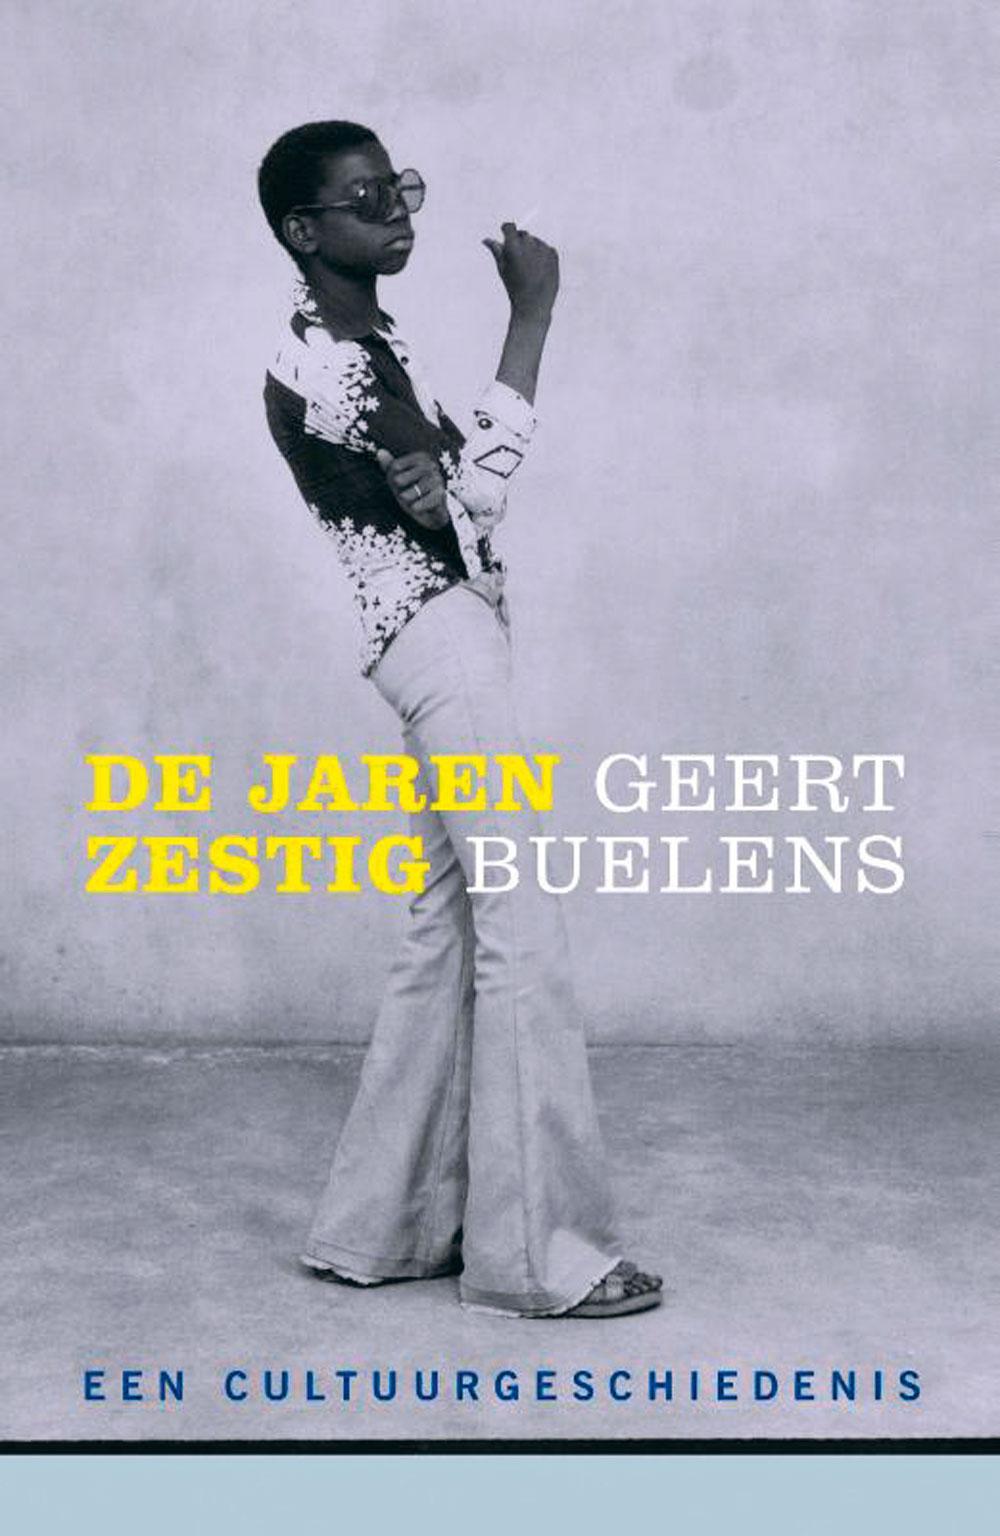 Geert Buelens, De jaren zestig: een cultuurgeschiedenis. Ambo|Anthos, 880 blz., 49,99 euro.